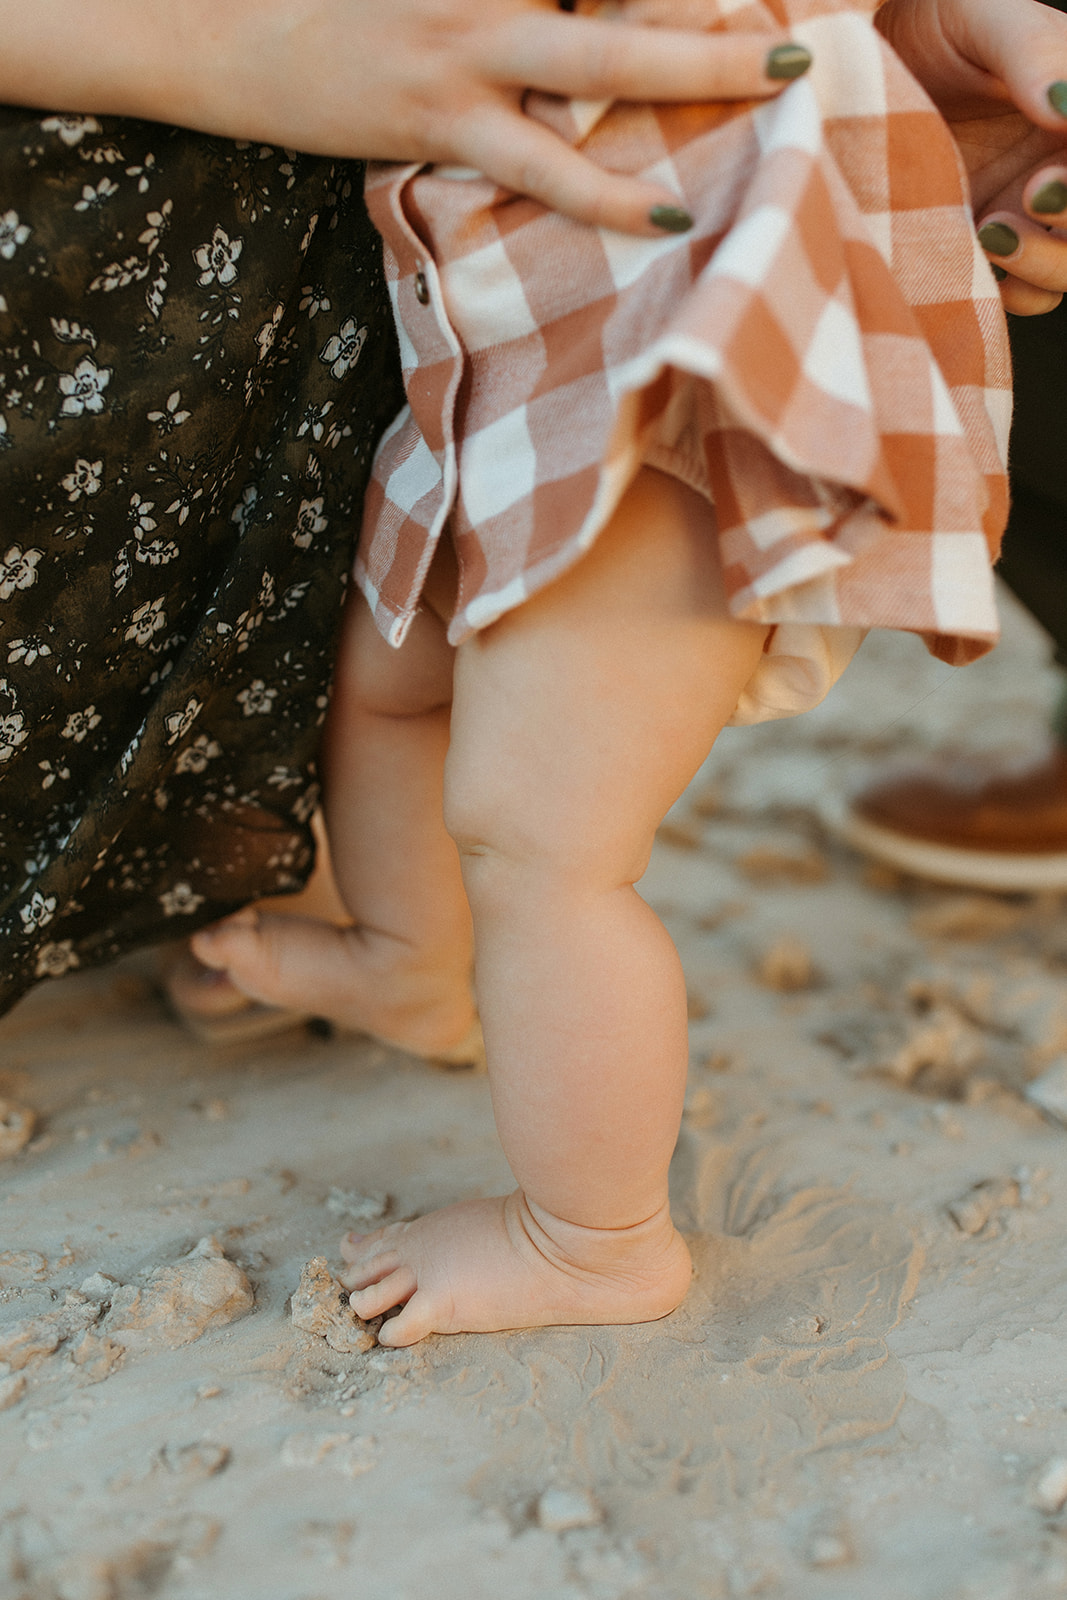 baby girl feet in desert sand